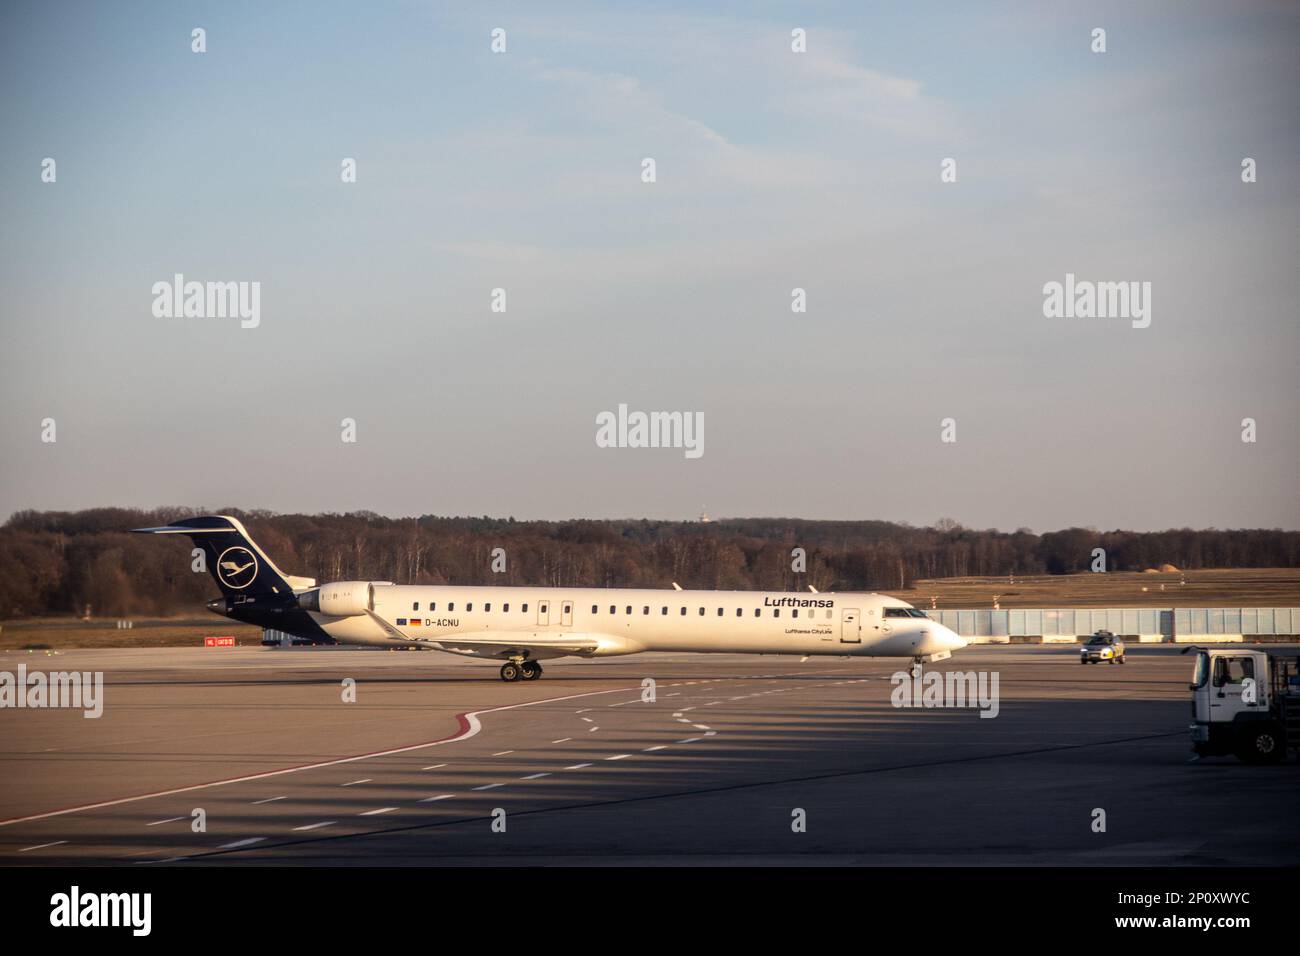 Aereo Lufthansa all'aeroporto di Koln/Bonn. Credit: Sinai Noor / Alamy Stock Photo Foto Stock